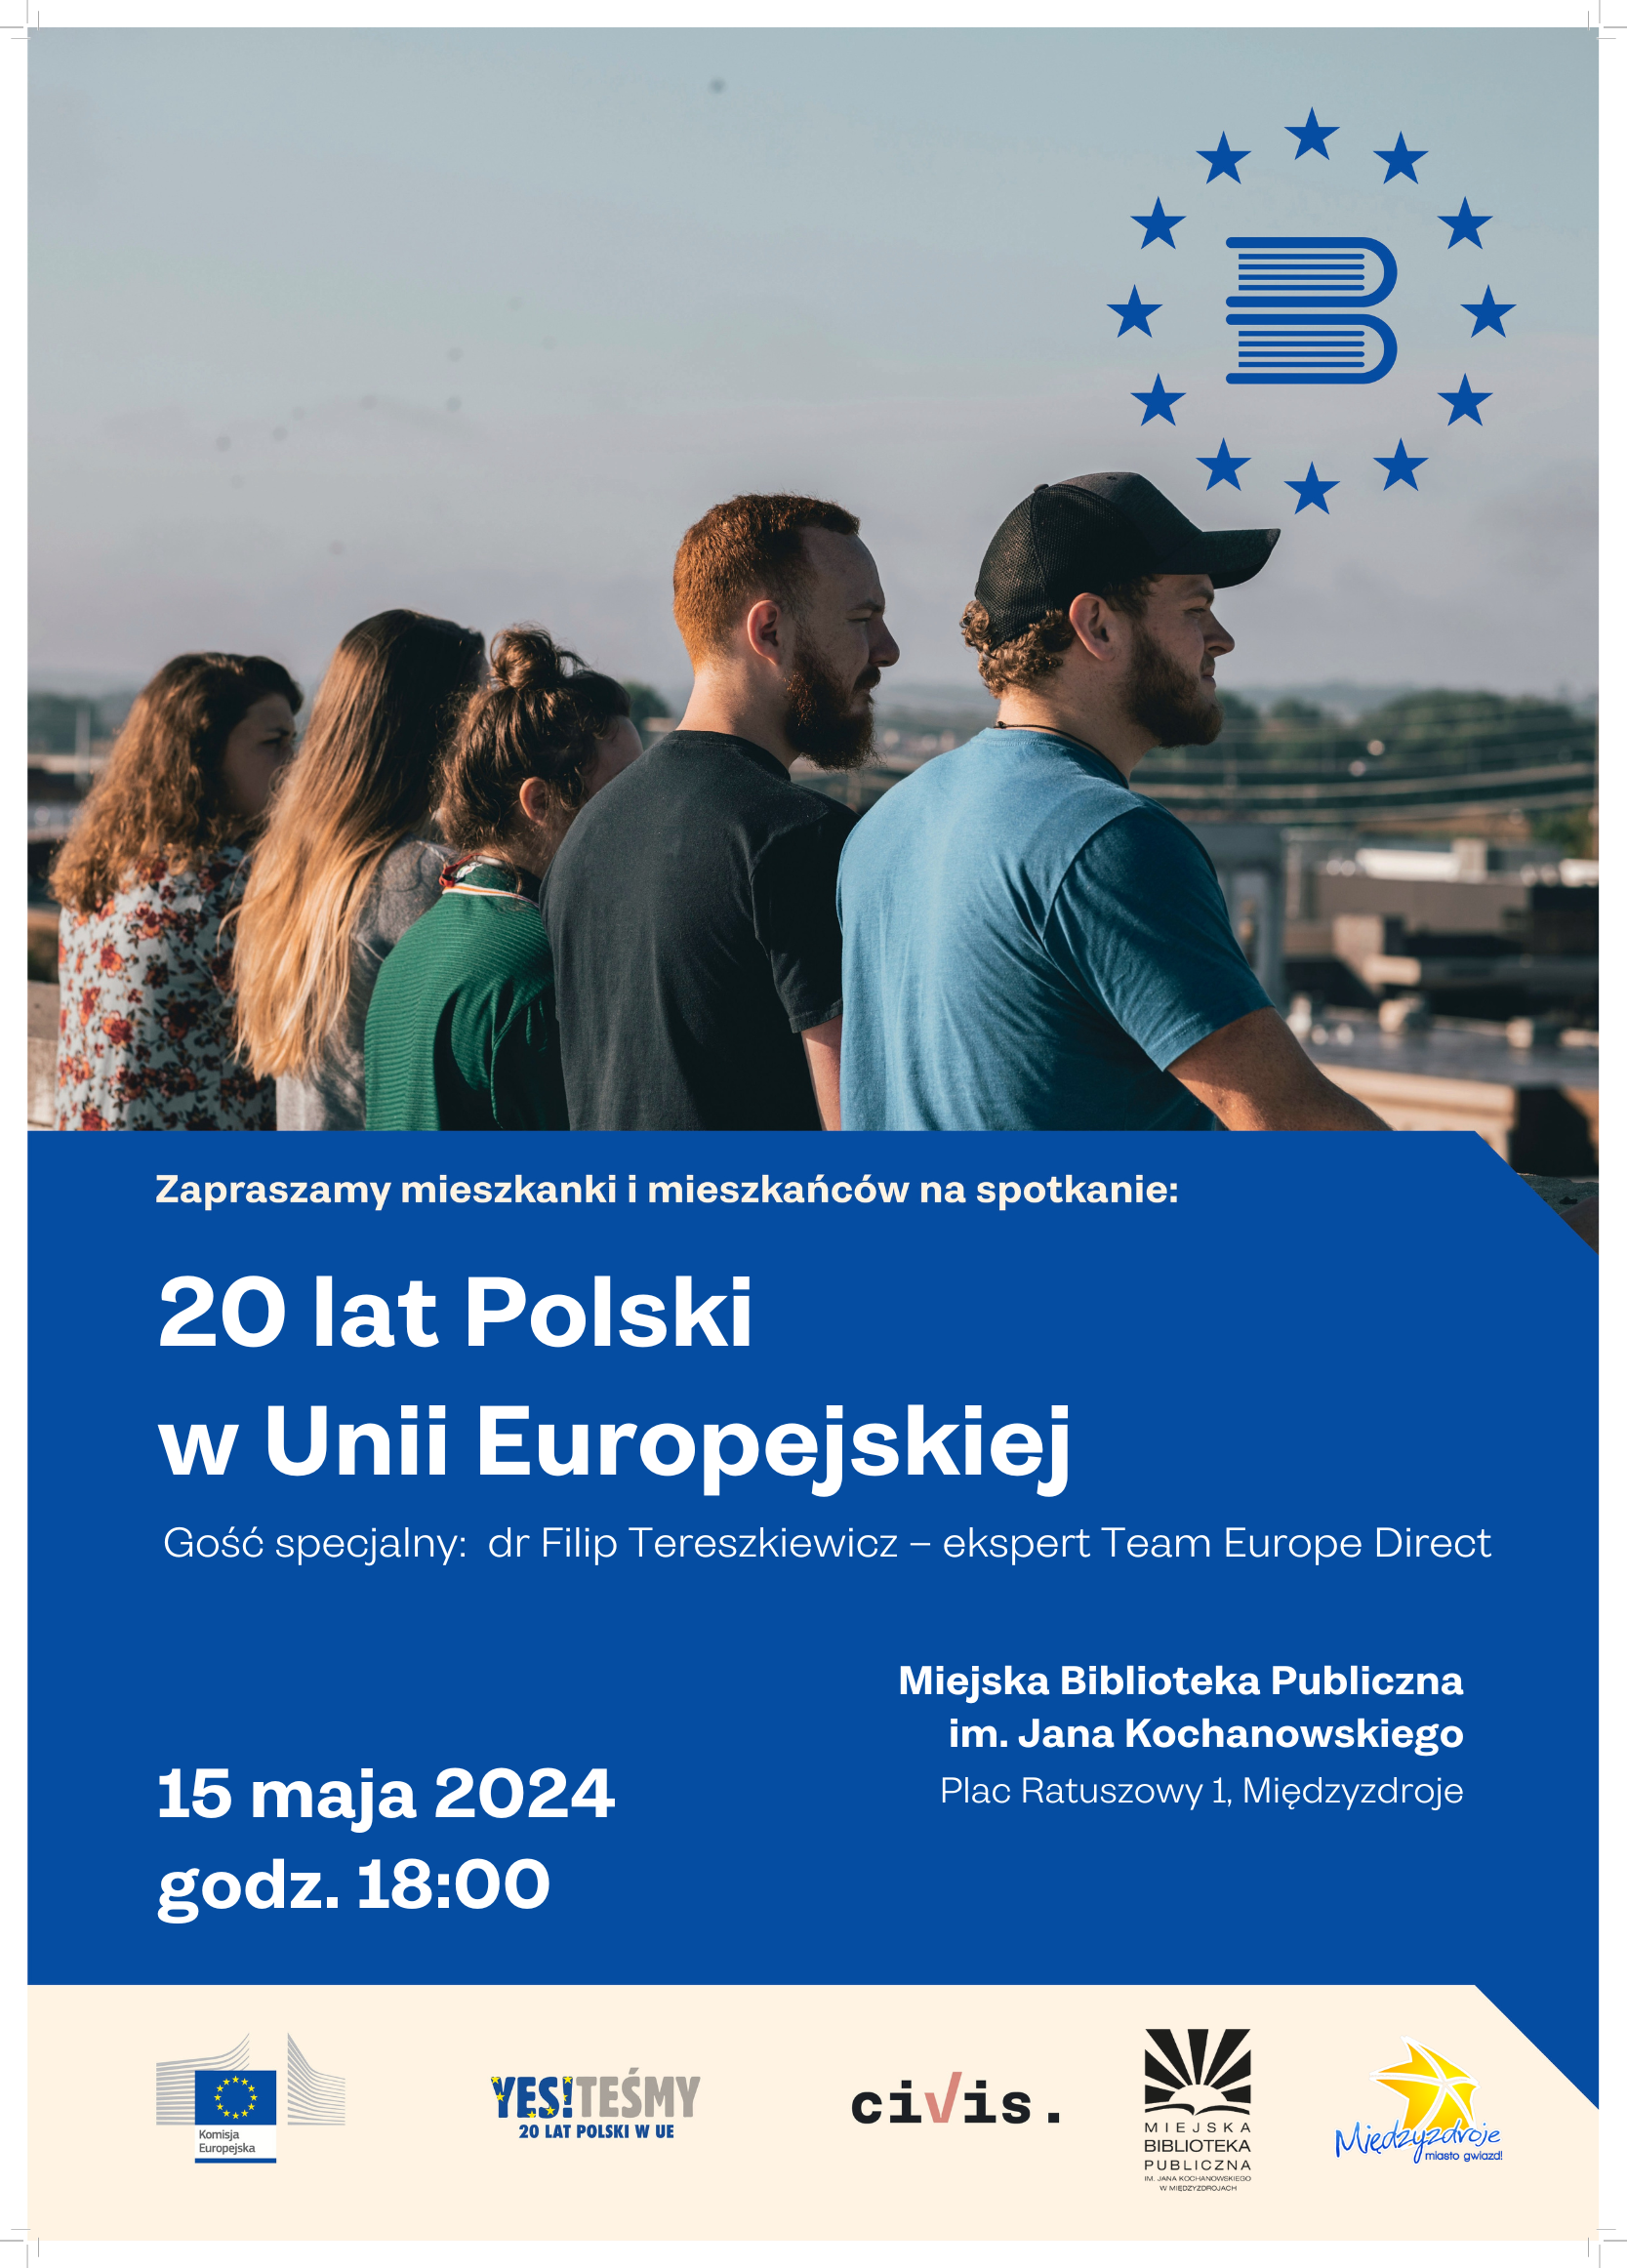 Spotkanie pt. „20 lat Polski w Unii Europejskiej” w międzyzdrojskiej bibliotece – zapowiedź